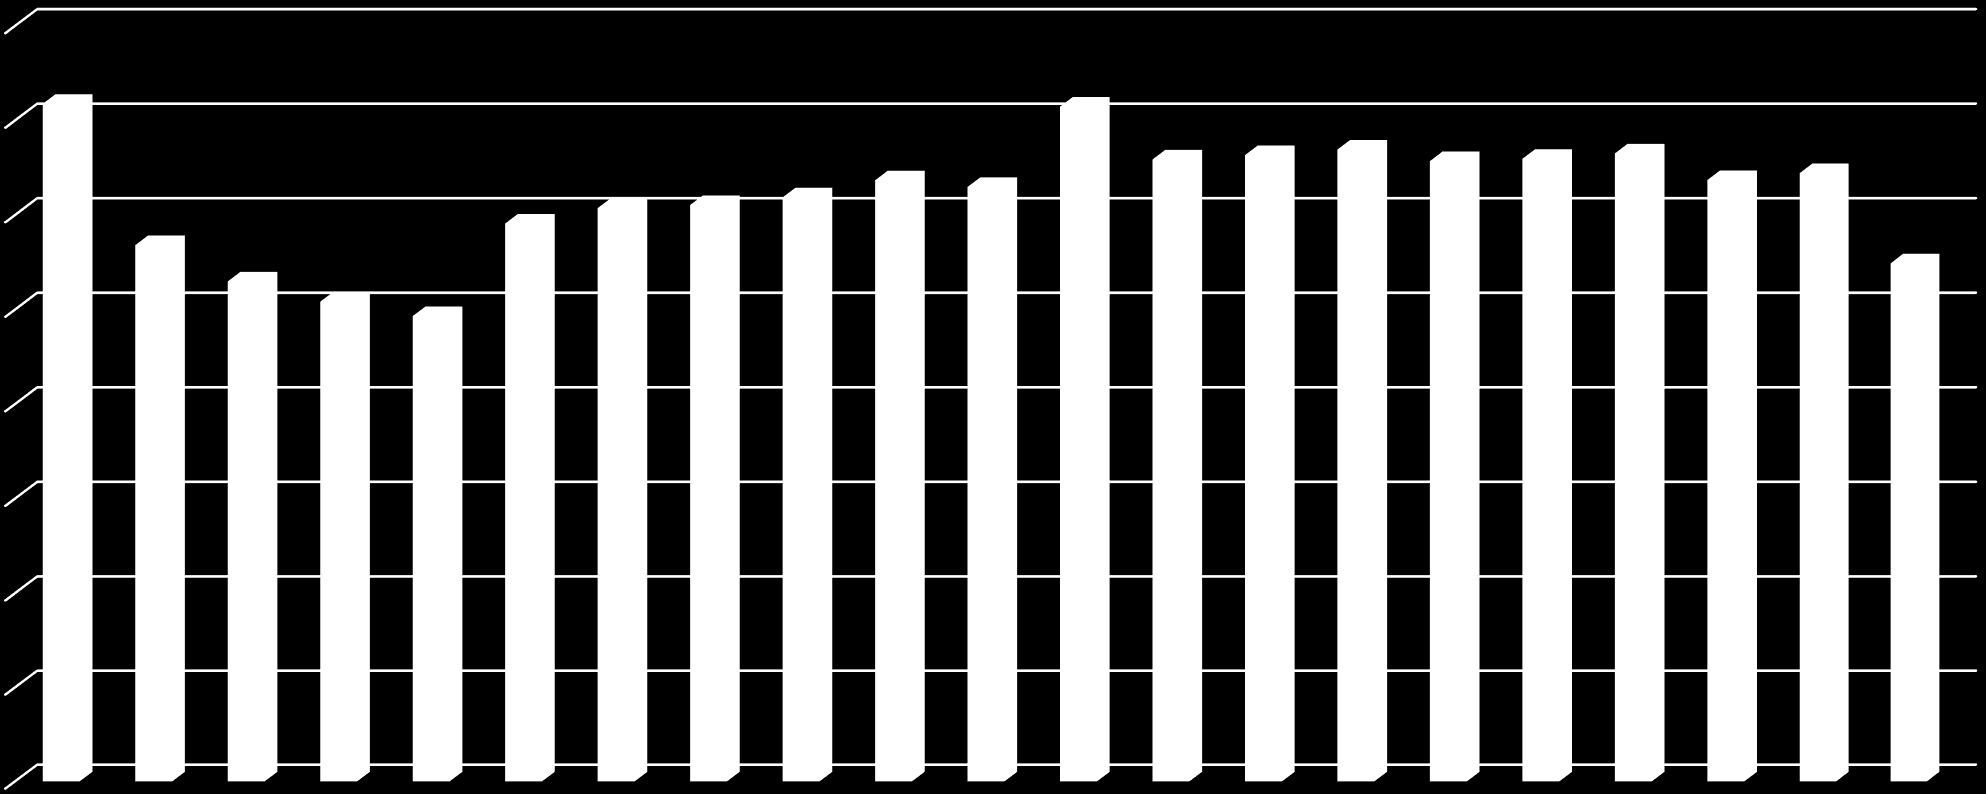 Maatalouden viljelijätuet Etelä-Savossa vuosina 1995-2015 -vuonna 2015 maksettiin viljelijöille 54,9 milj.